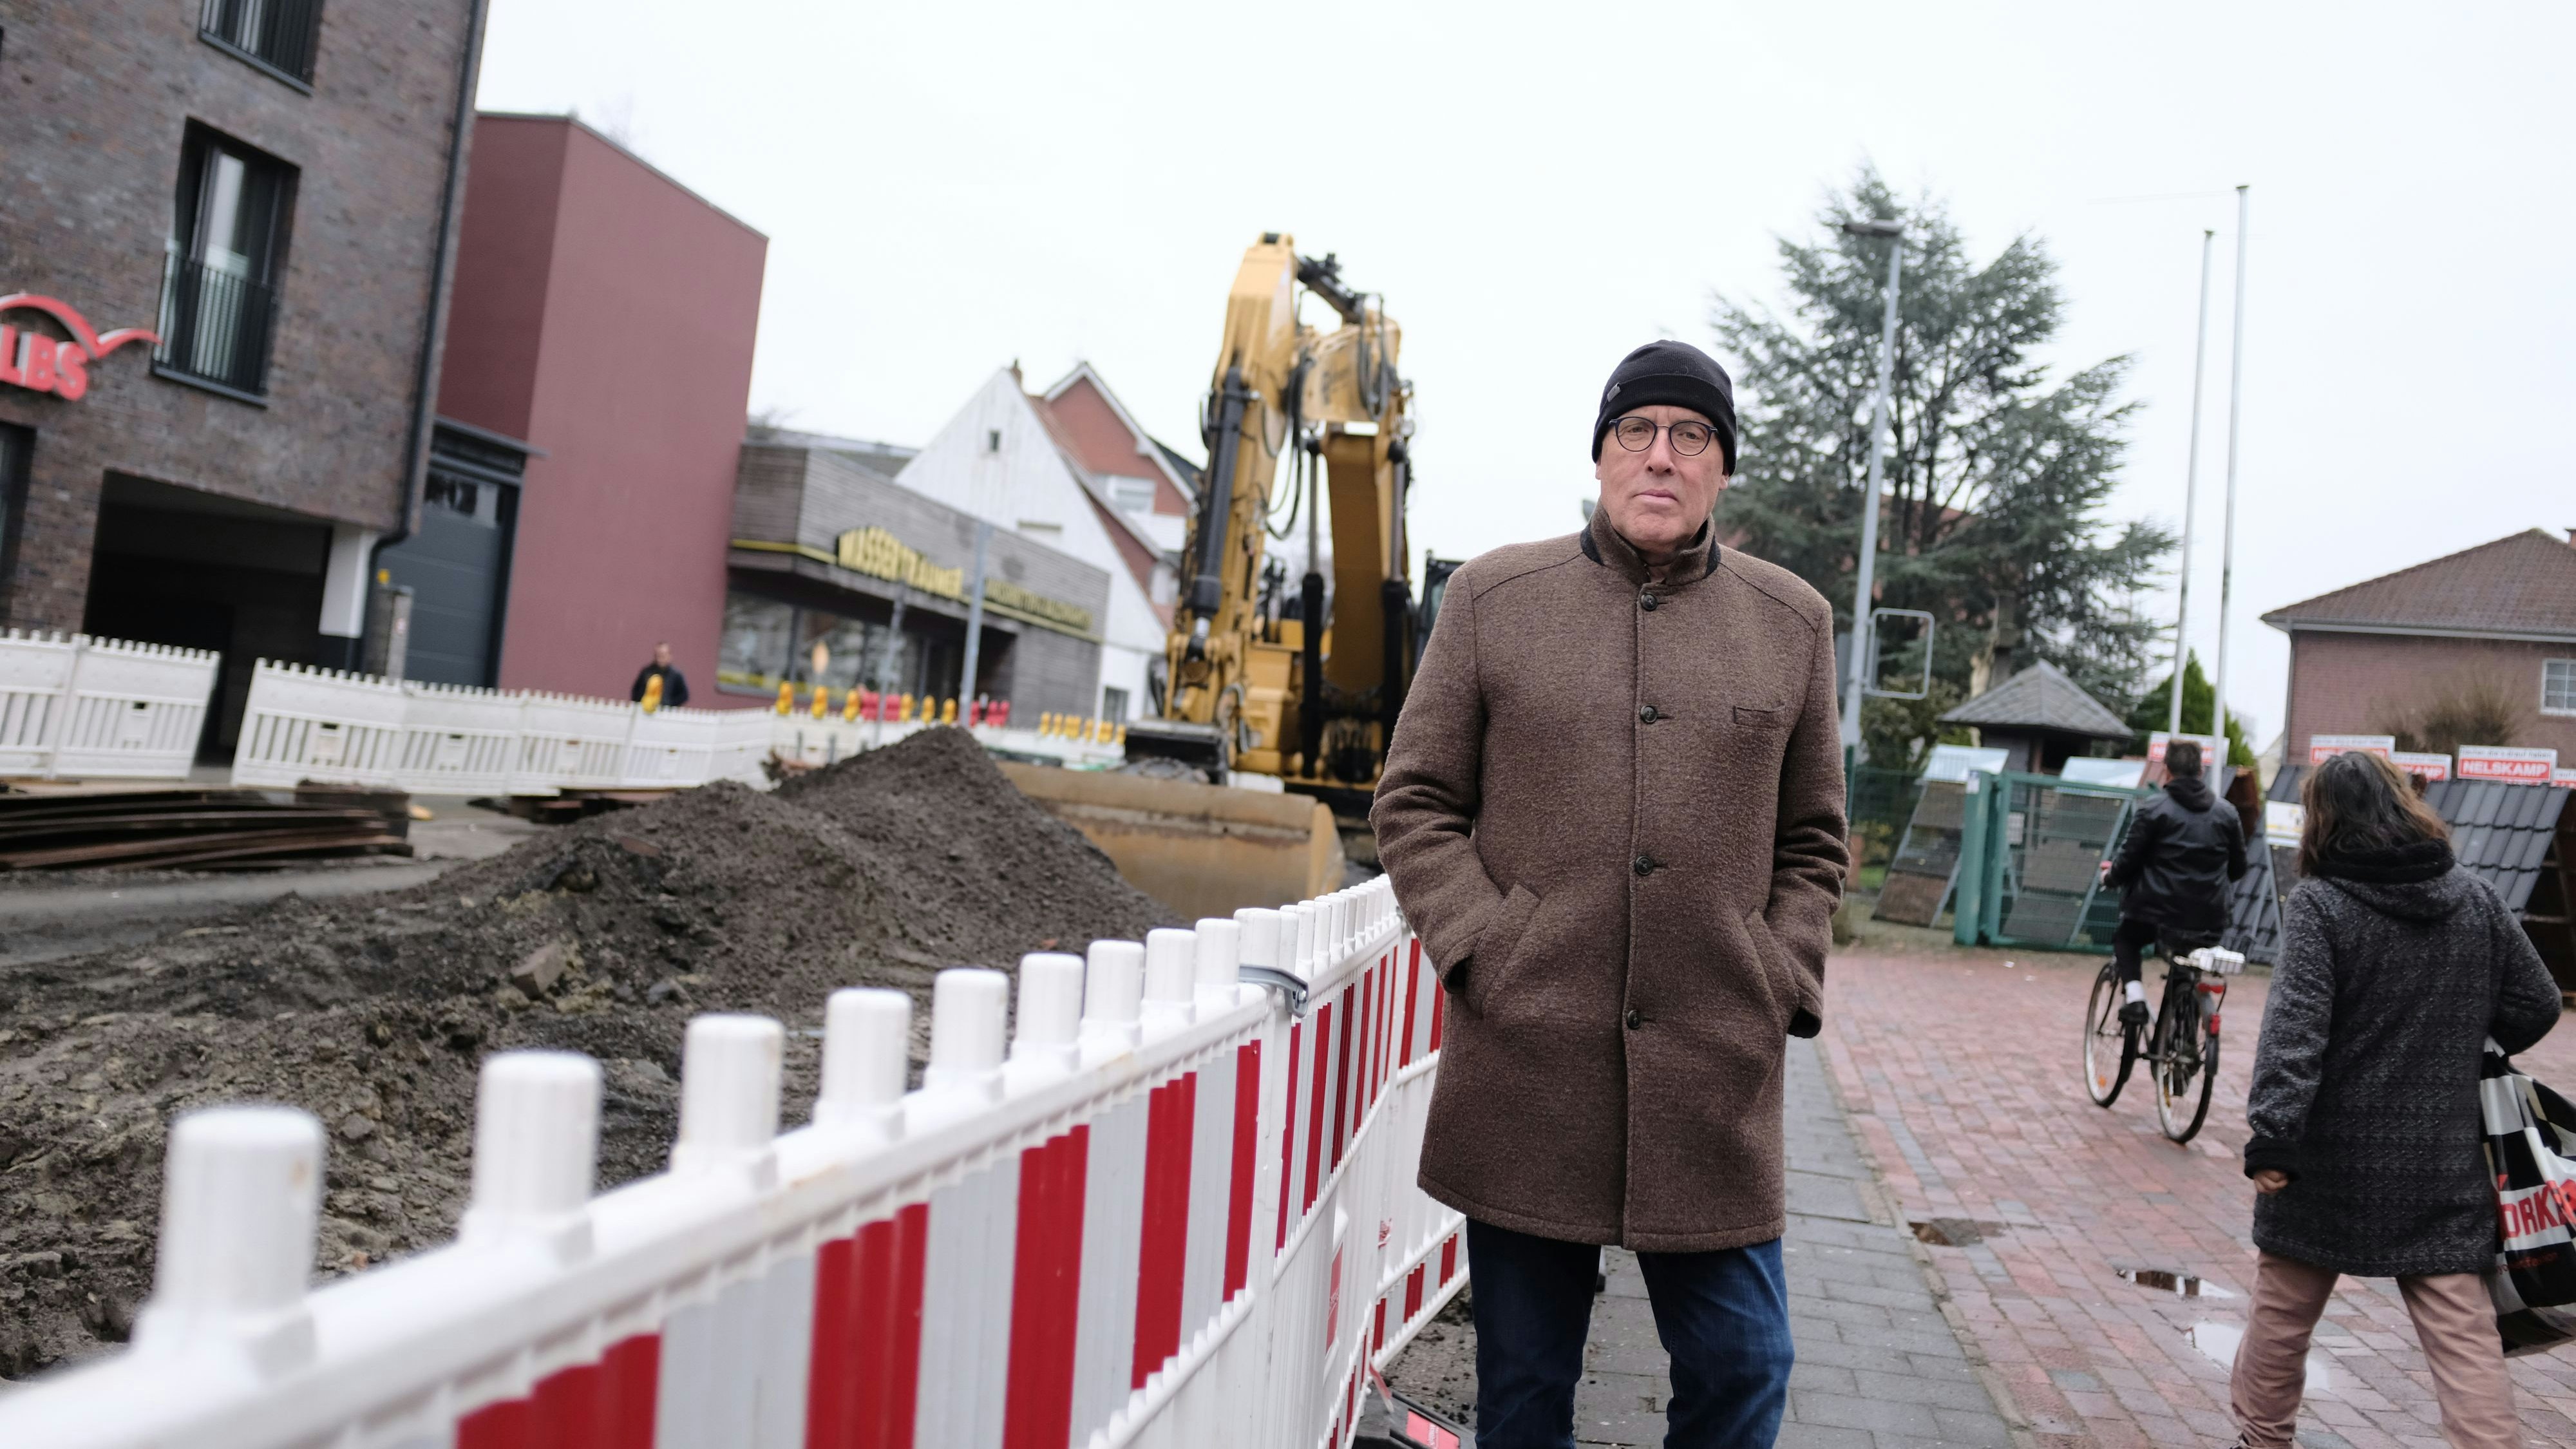 Bauarbeiten vor der Haustür: Karl Kleier, Geschäftsführer des Baustoffhandels Kleier, beklagt vor allem weniger "Spontankunden". Foto: Niemeyer